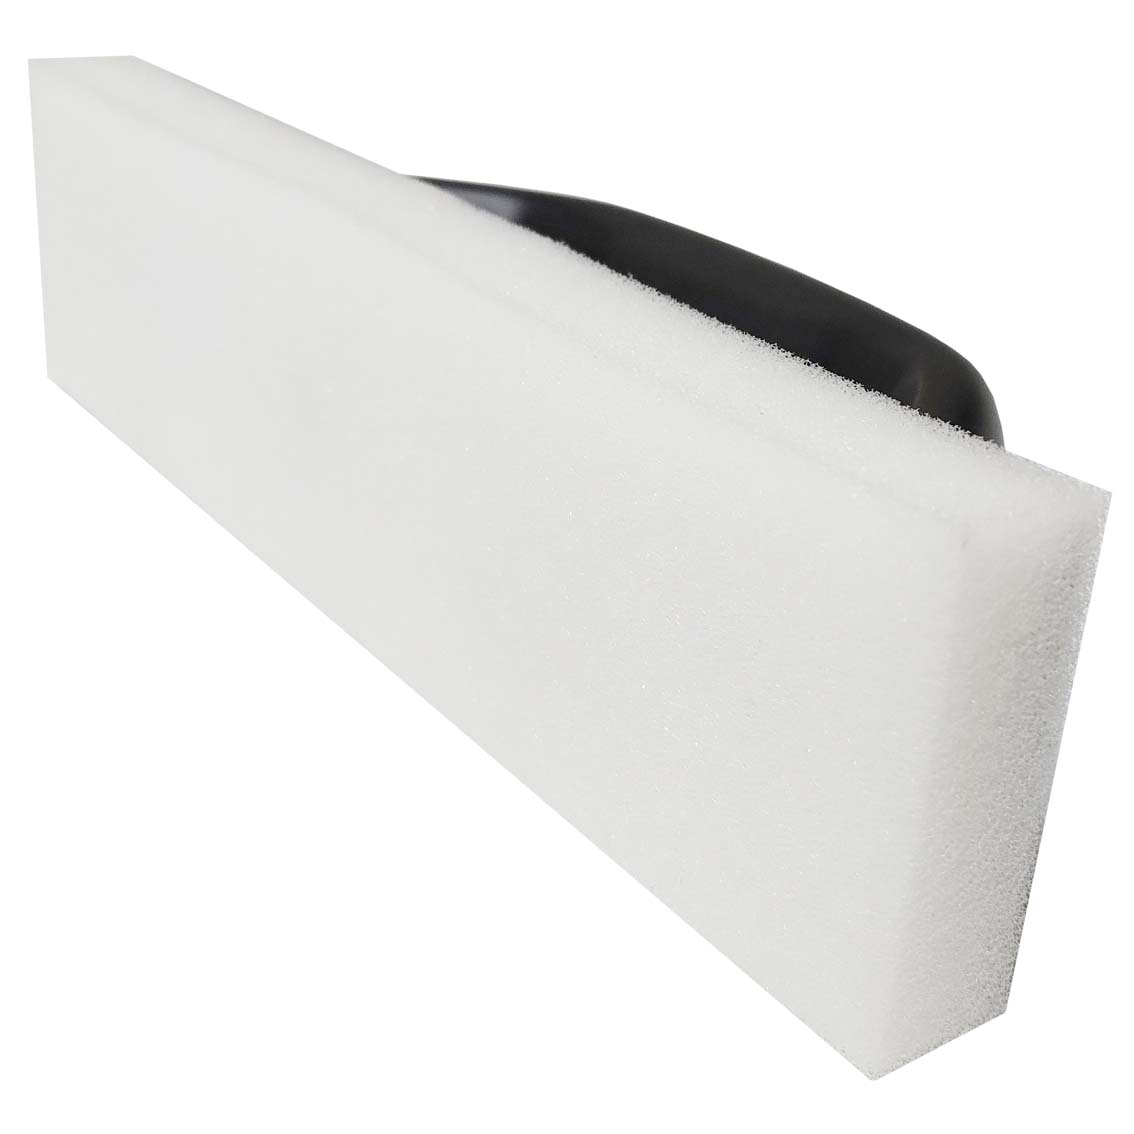 Plastic trowel 210x55/20 mm - soft foam